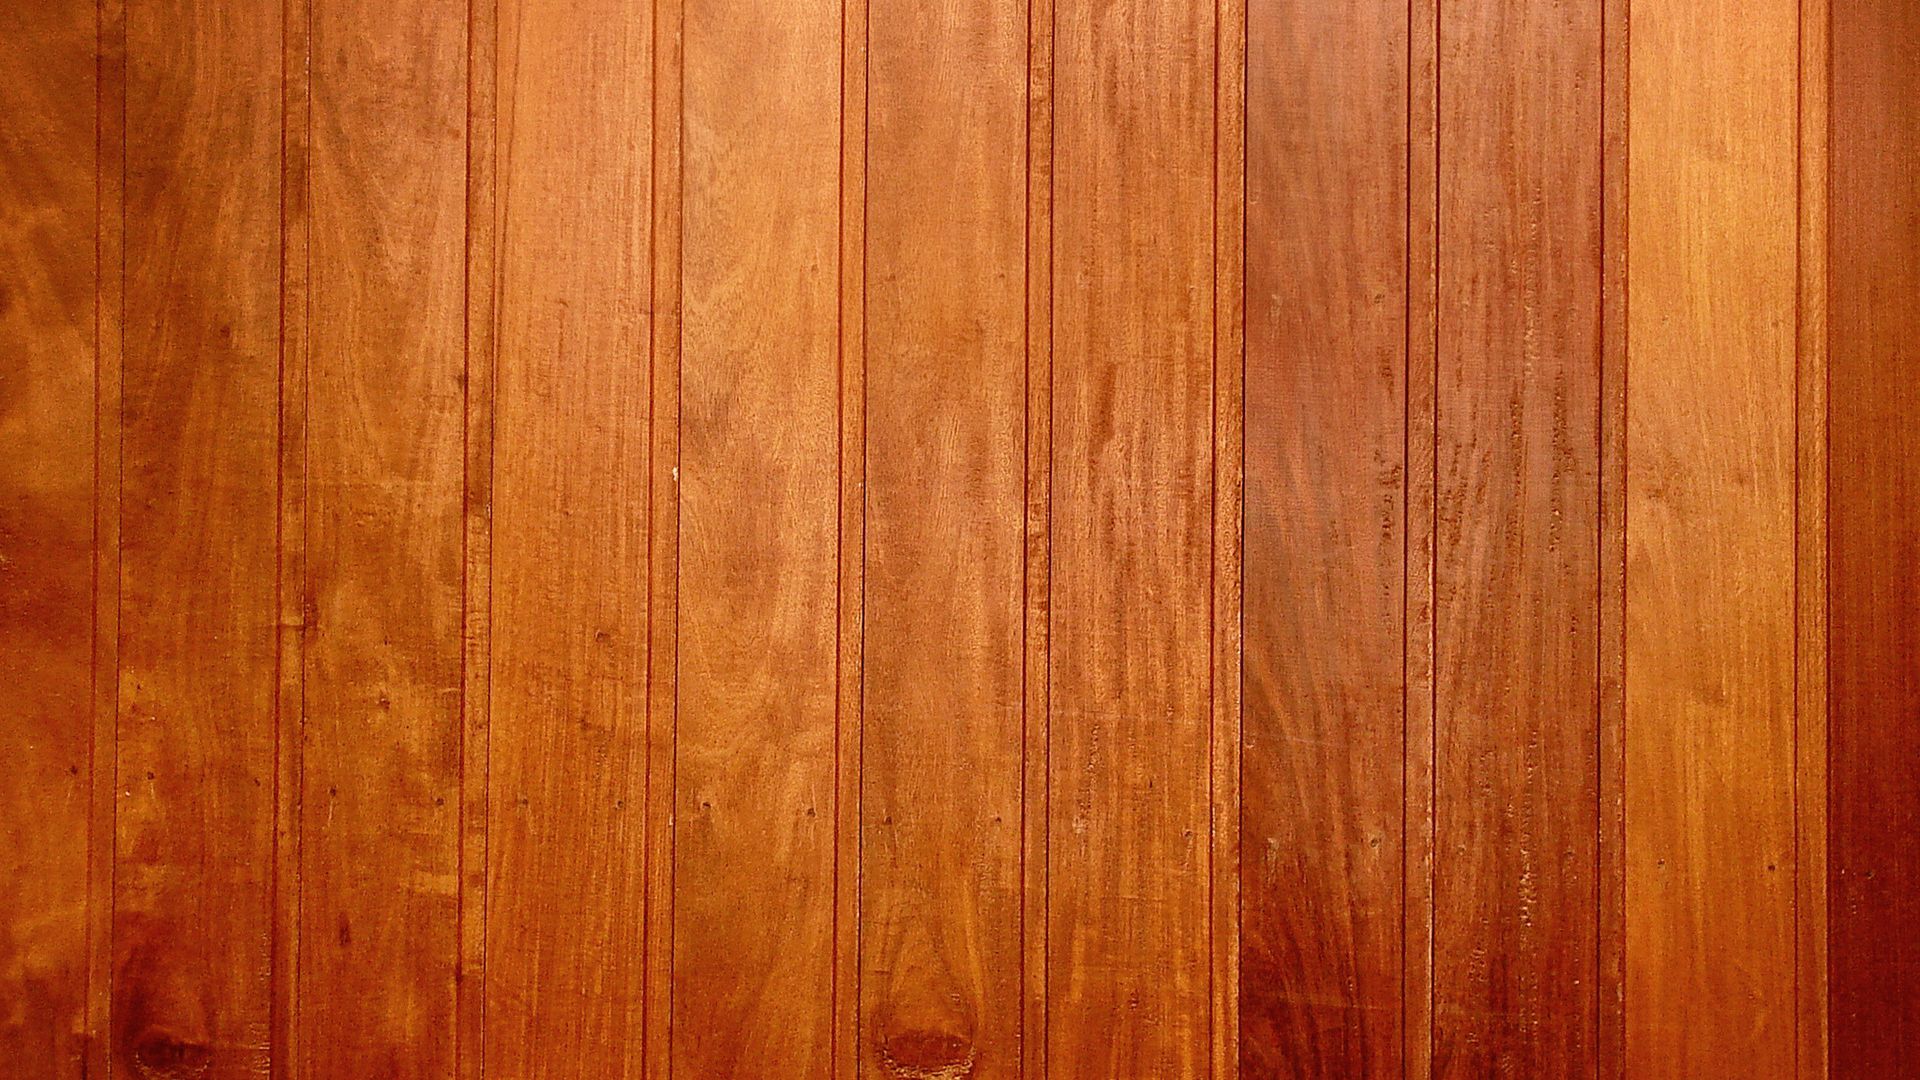 Tấm ván gỗ: Tấm ván gỗ là một chất liệu phổ biến, mang đến cảm giác chắc chắn và mạnh mẽ. Xem ảnh với tấm ván gỗ để thấy được sự bền bỉ và sự đa dạng của chúng, cho phép bạn tạo ra những bức ảnh độc đáo và đẹp mắt.